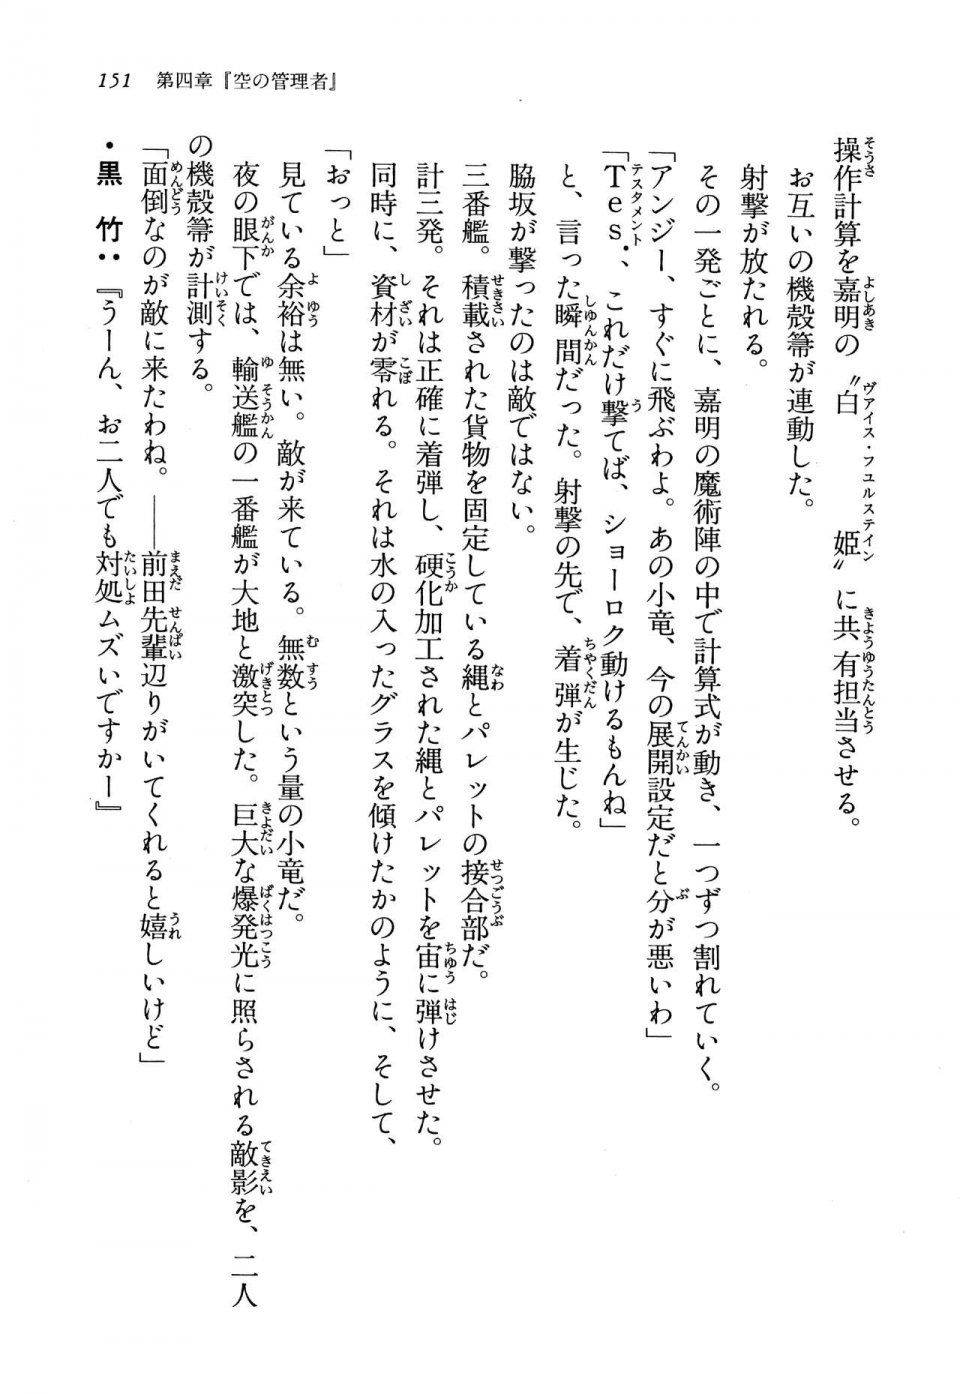 Kyoukai Senjou no Horizon LN Vol 13(6A) - Photo #151